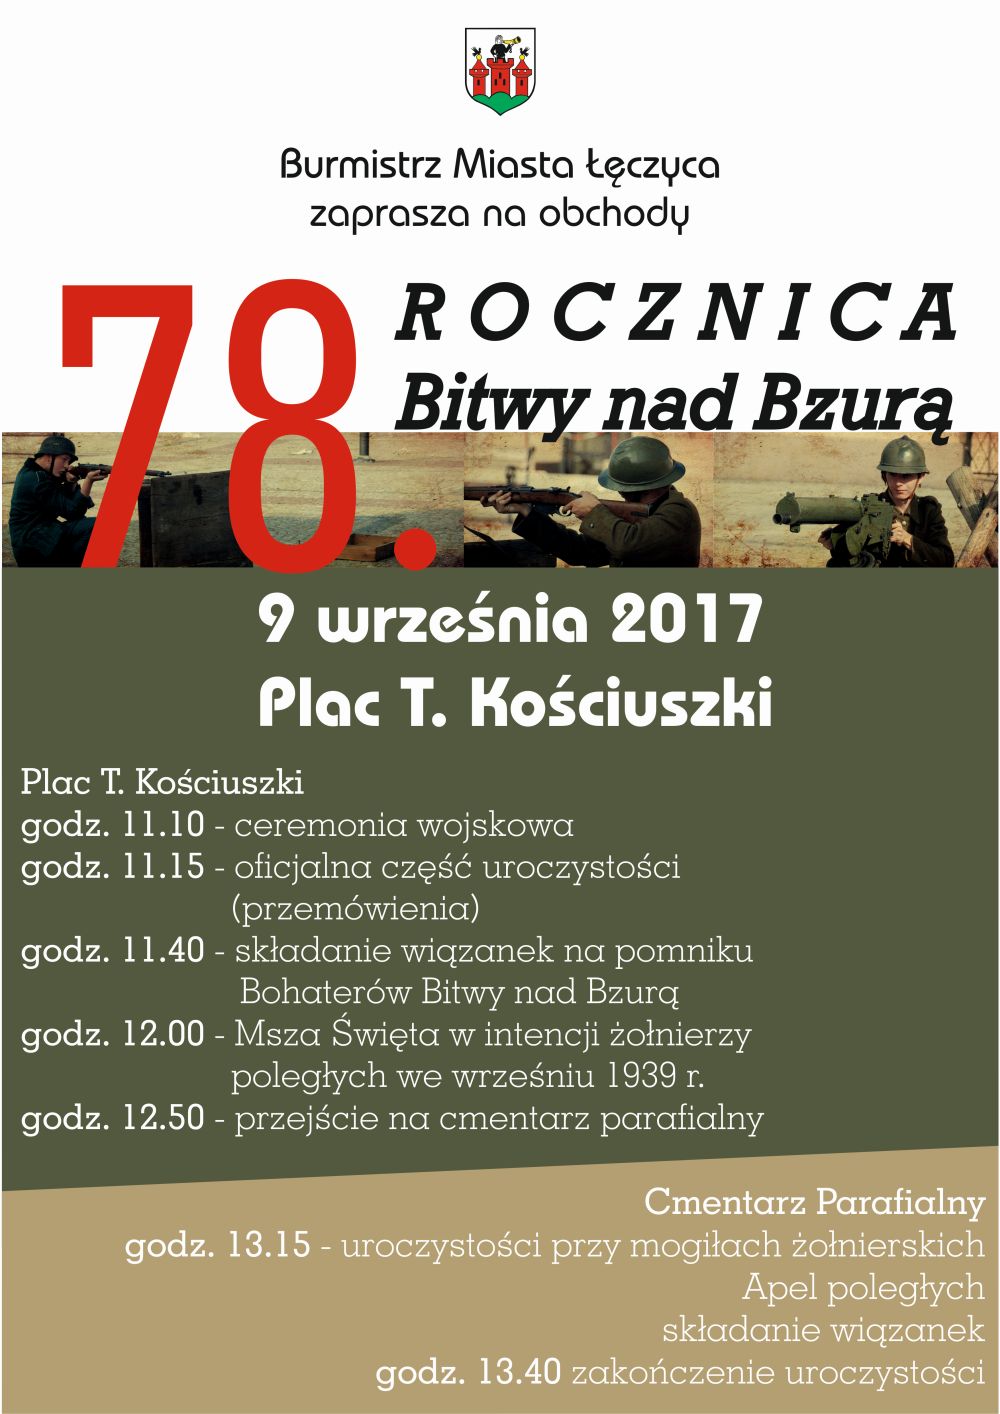 Zaproszenie na obchody 78. Rocznicy Bitwy nad Bzurą - Zdjęcie główne